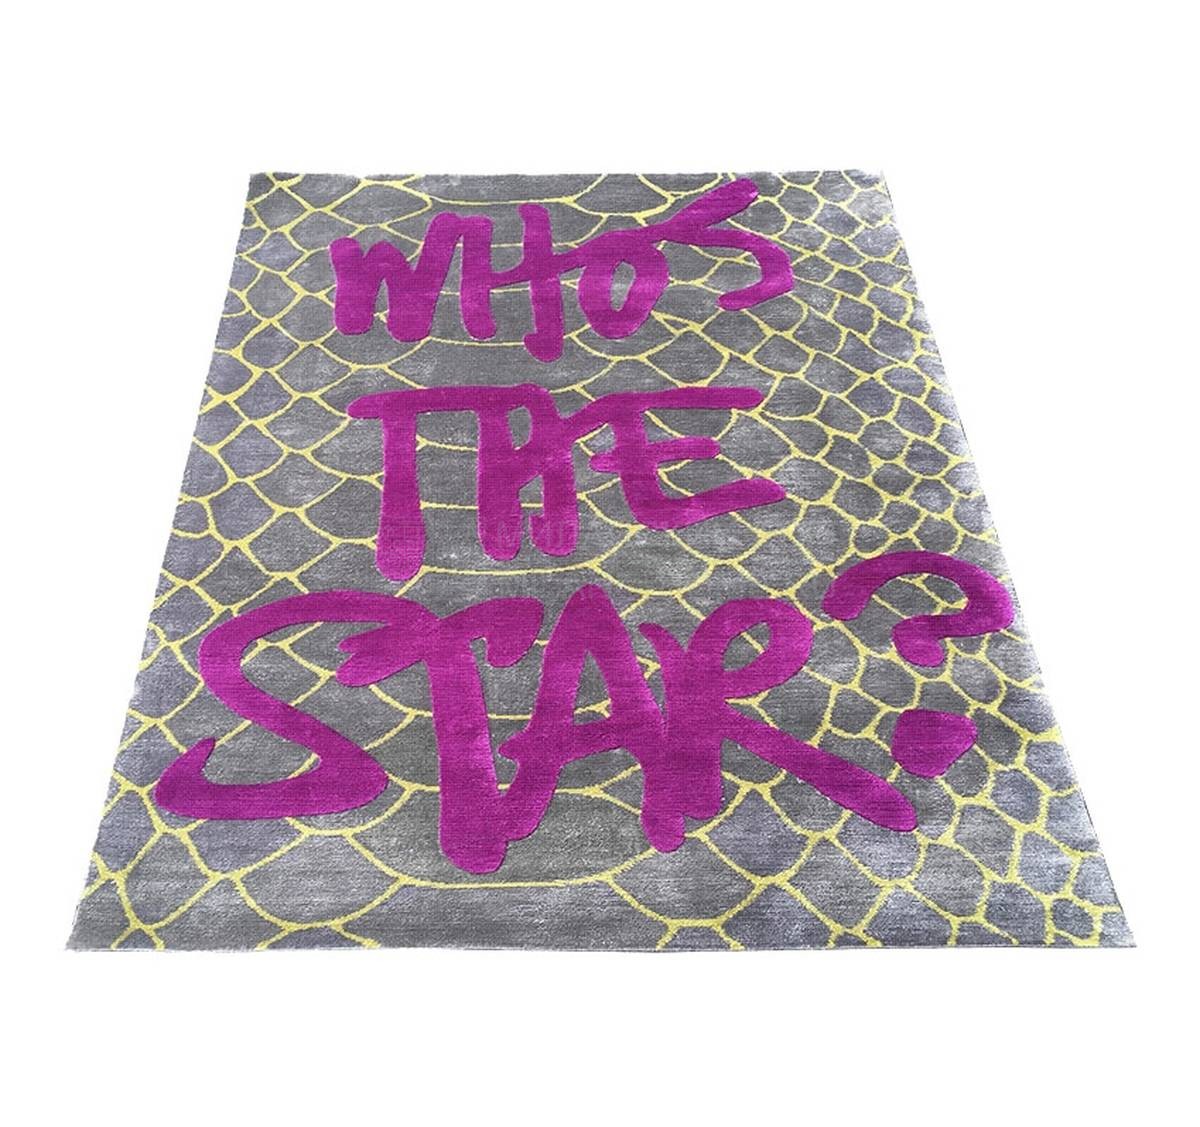 Ковер Who's the Star rug Silver из Великобритании фабрики JIMMIE MARTIN